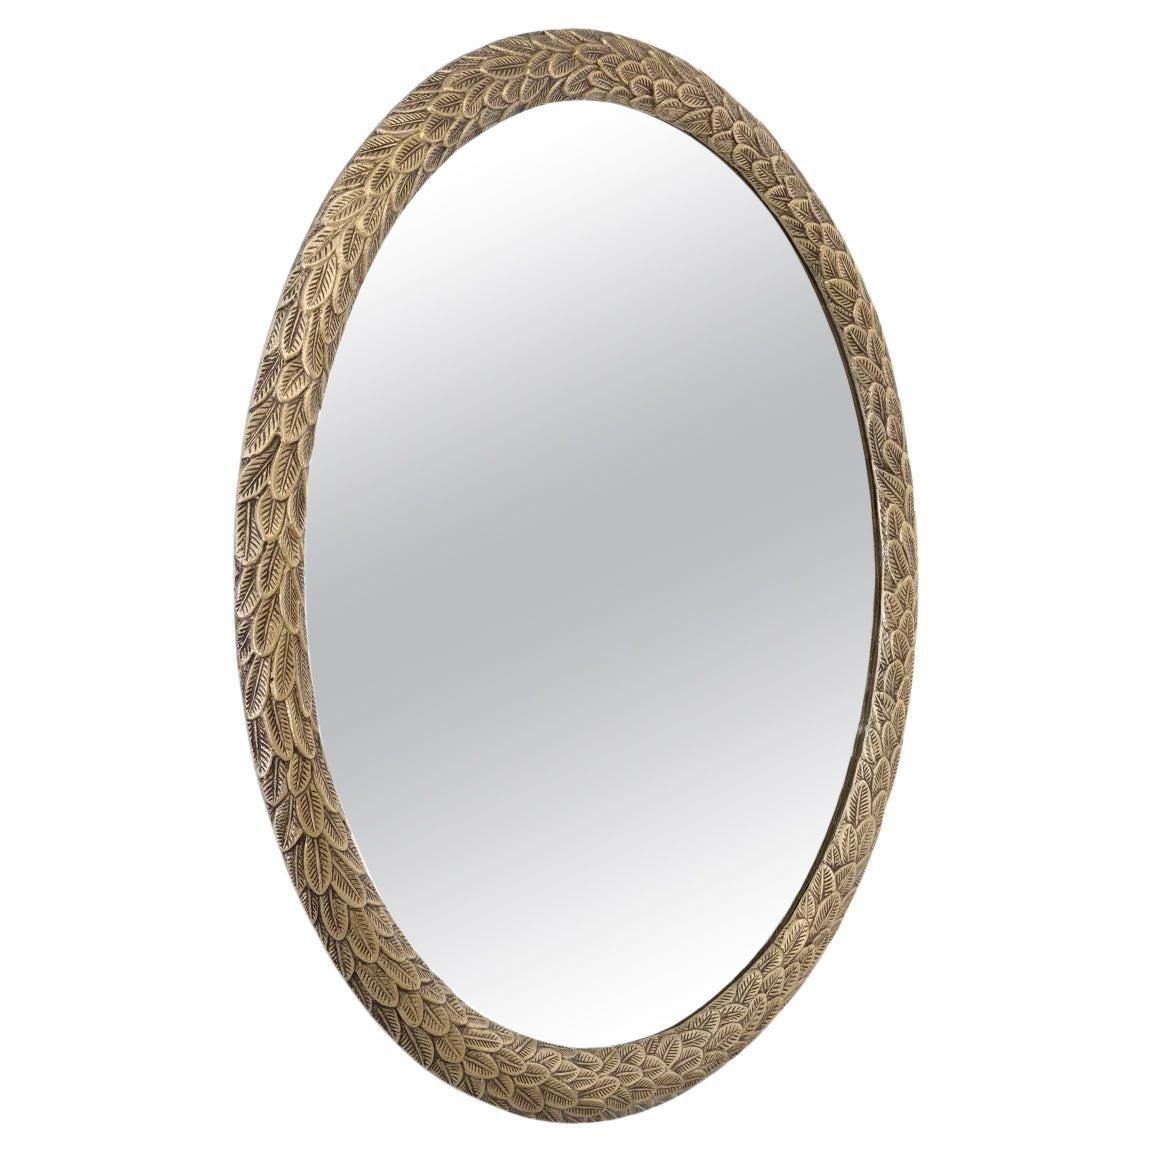 Sodad Mirror For Sale